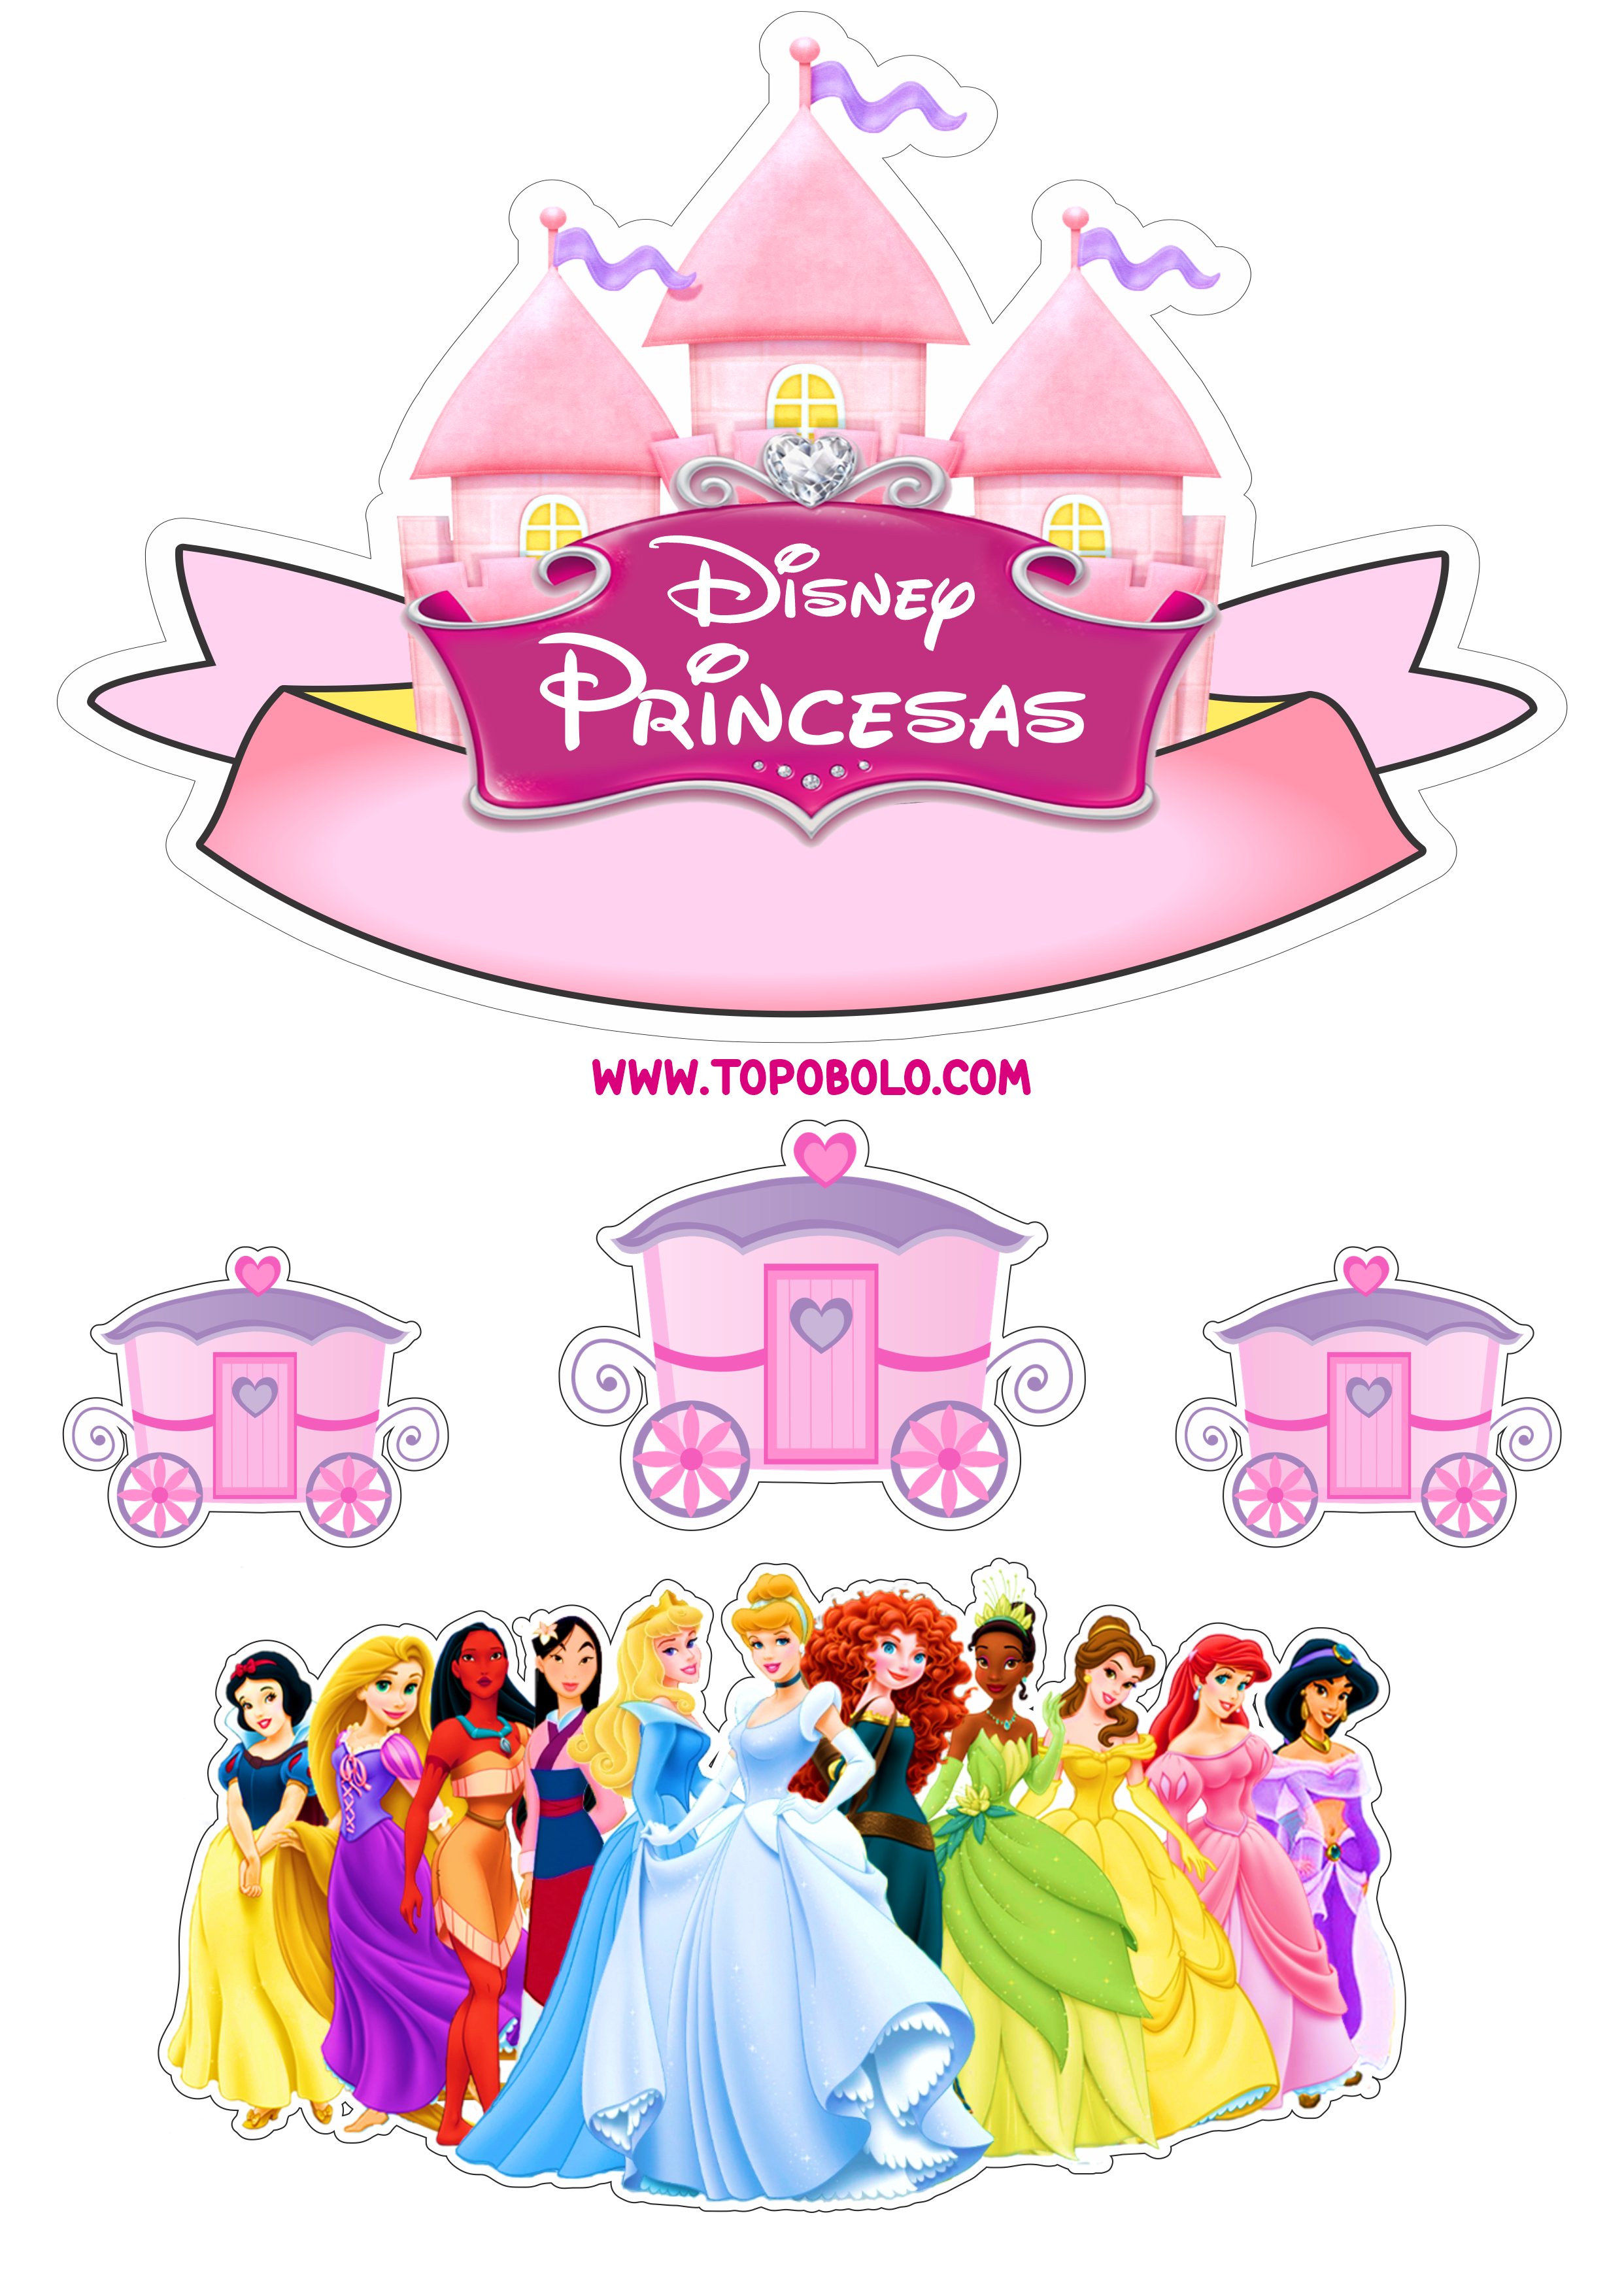 Princesas Disney topo de bolo pronto para imprimir aniversário infantil papelaria png